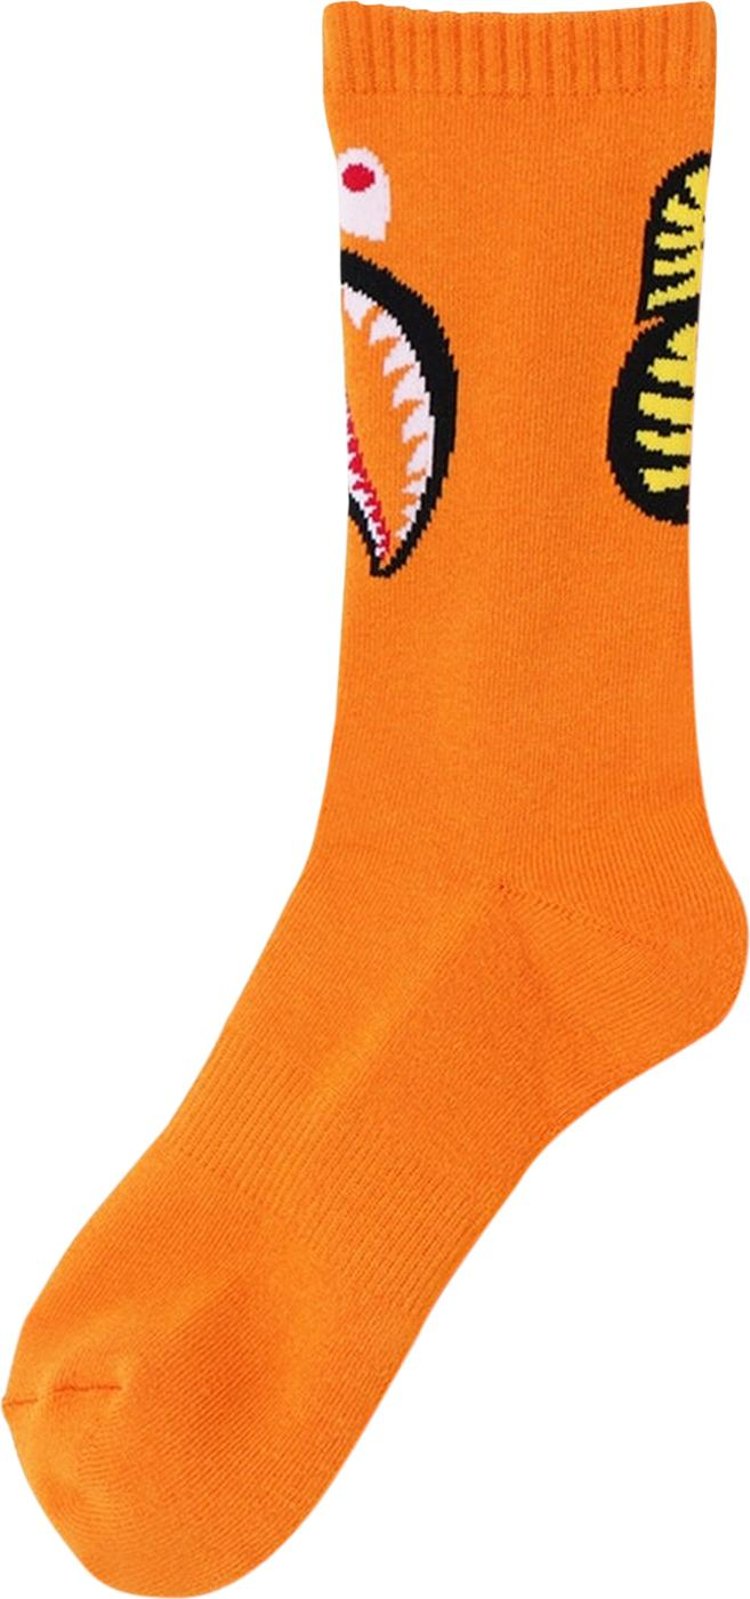 BAPE Shark Socks 'Orange'